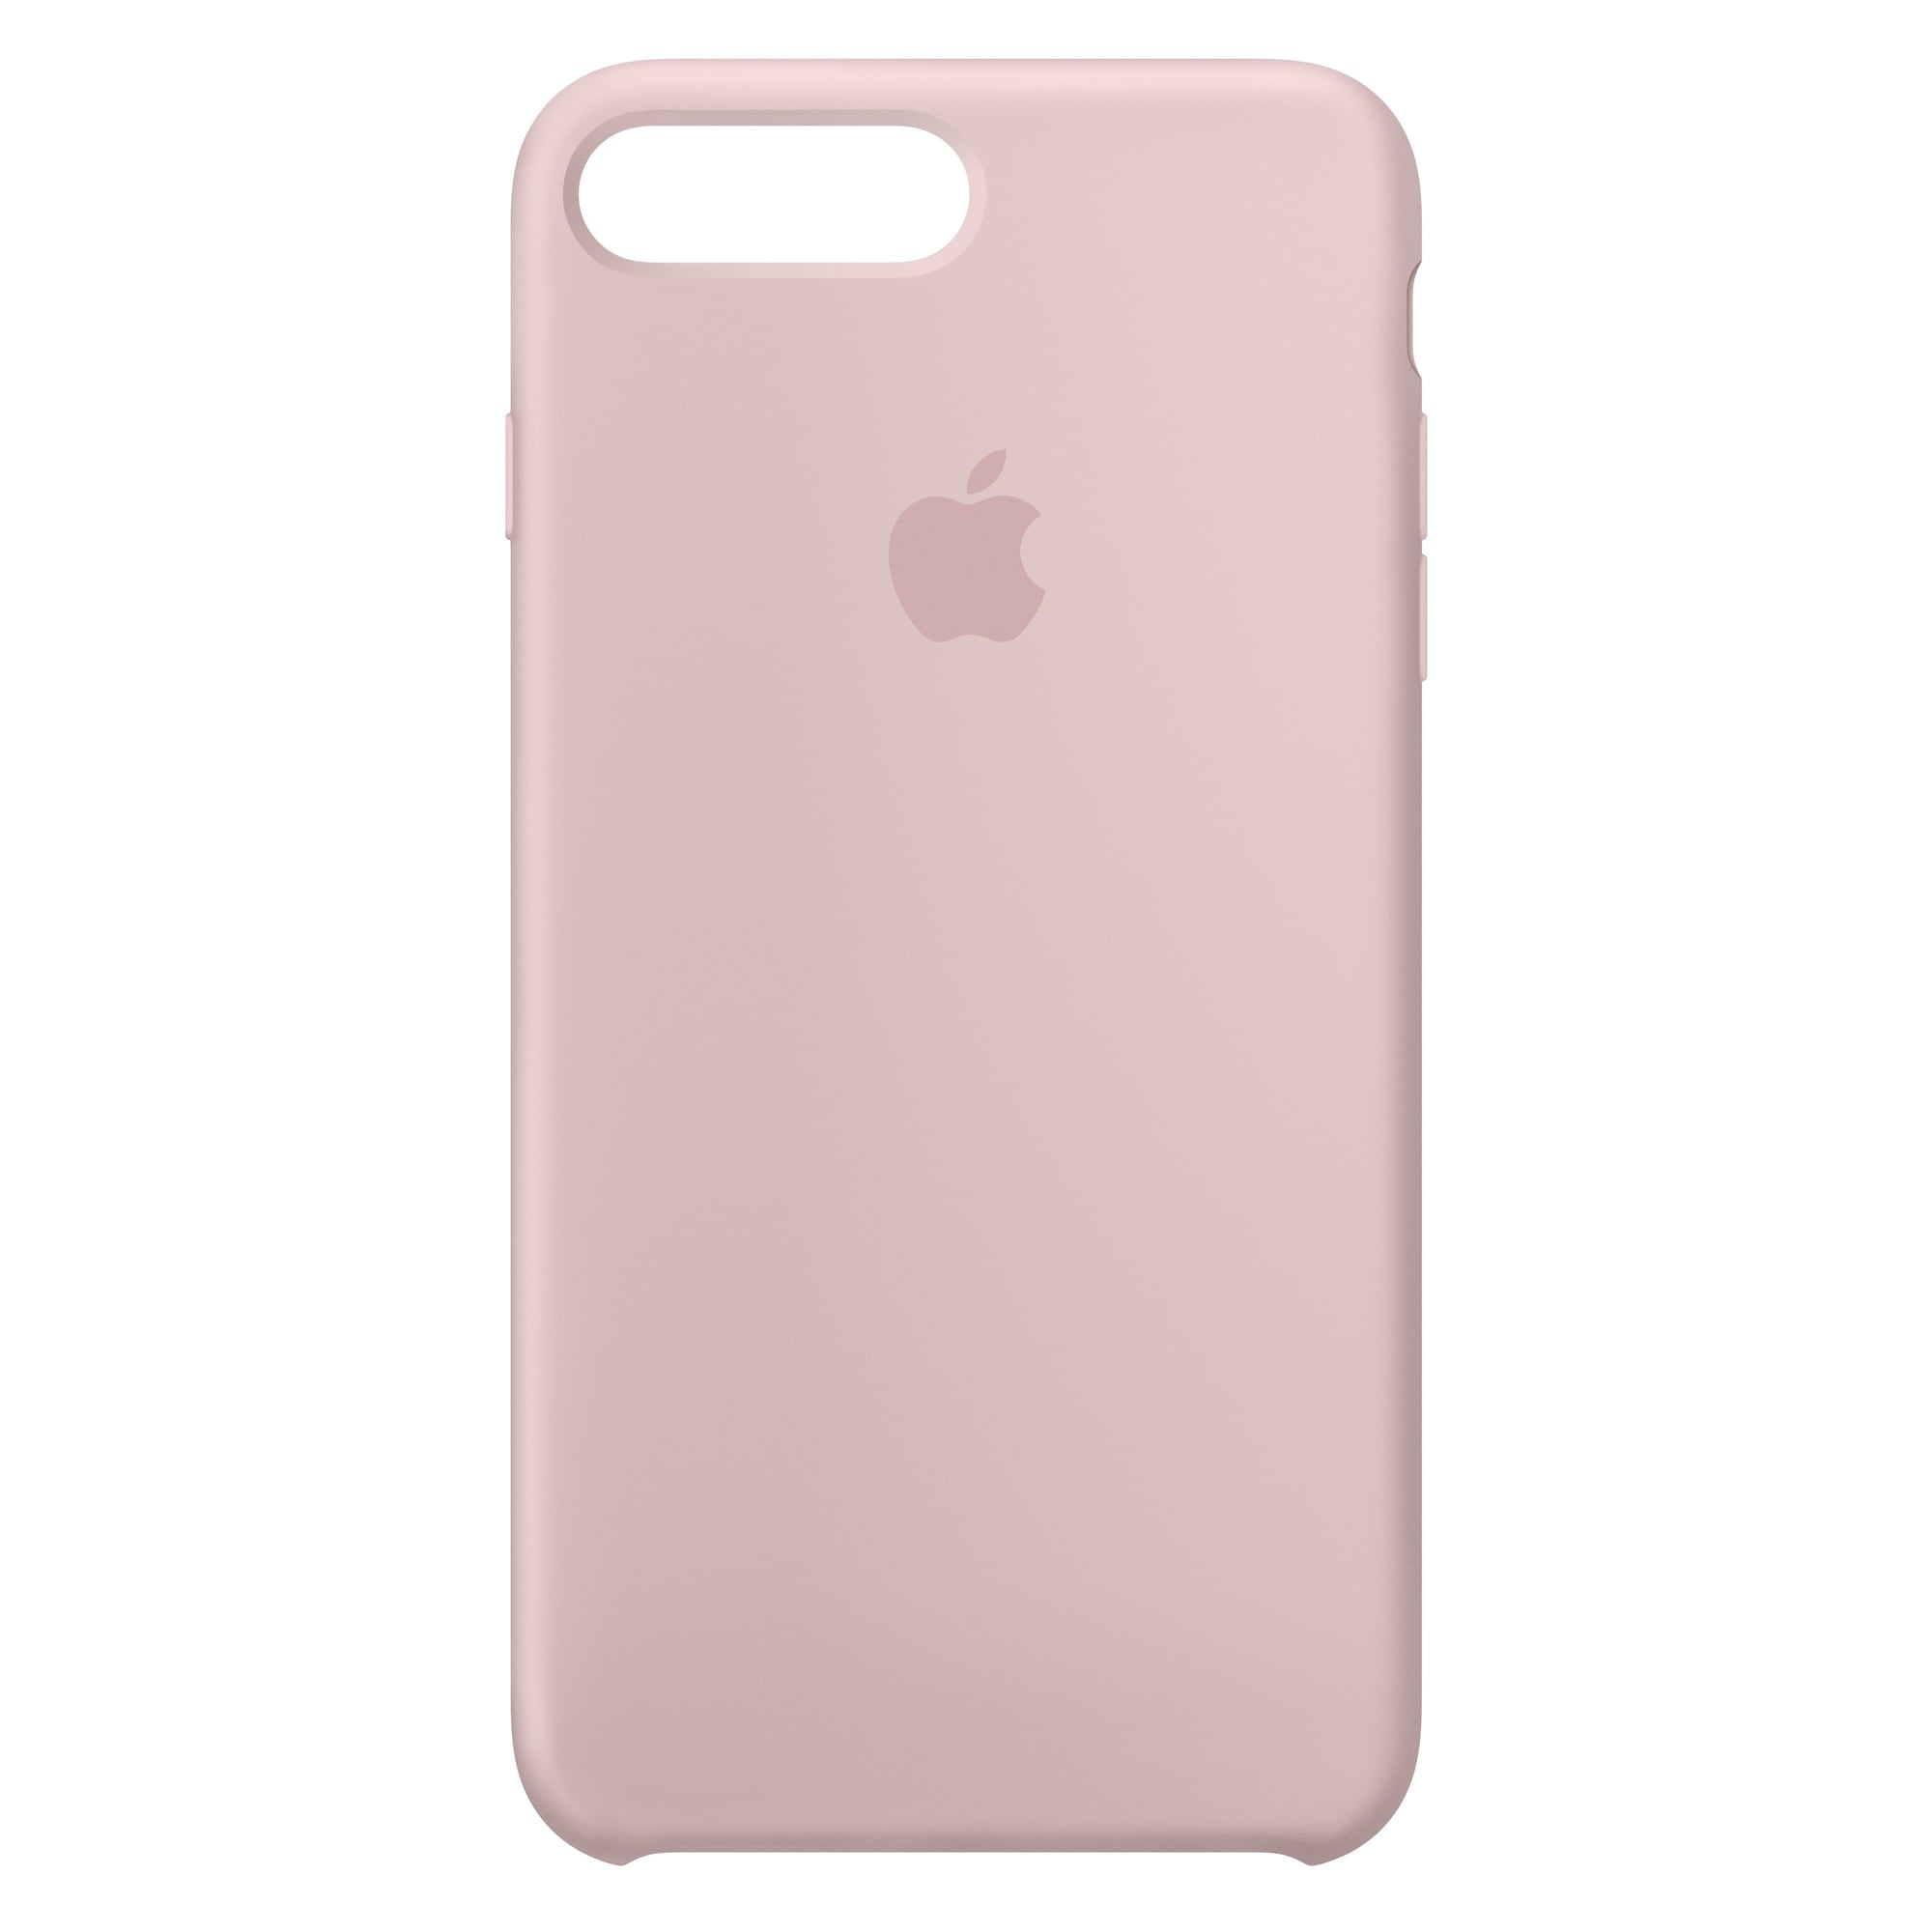 iPhone 8 Plus silikondeksel (rosa sand) - Elkjøp